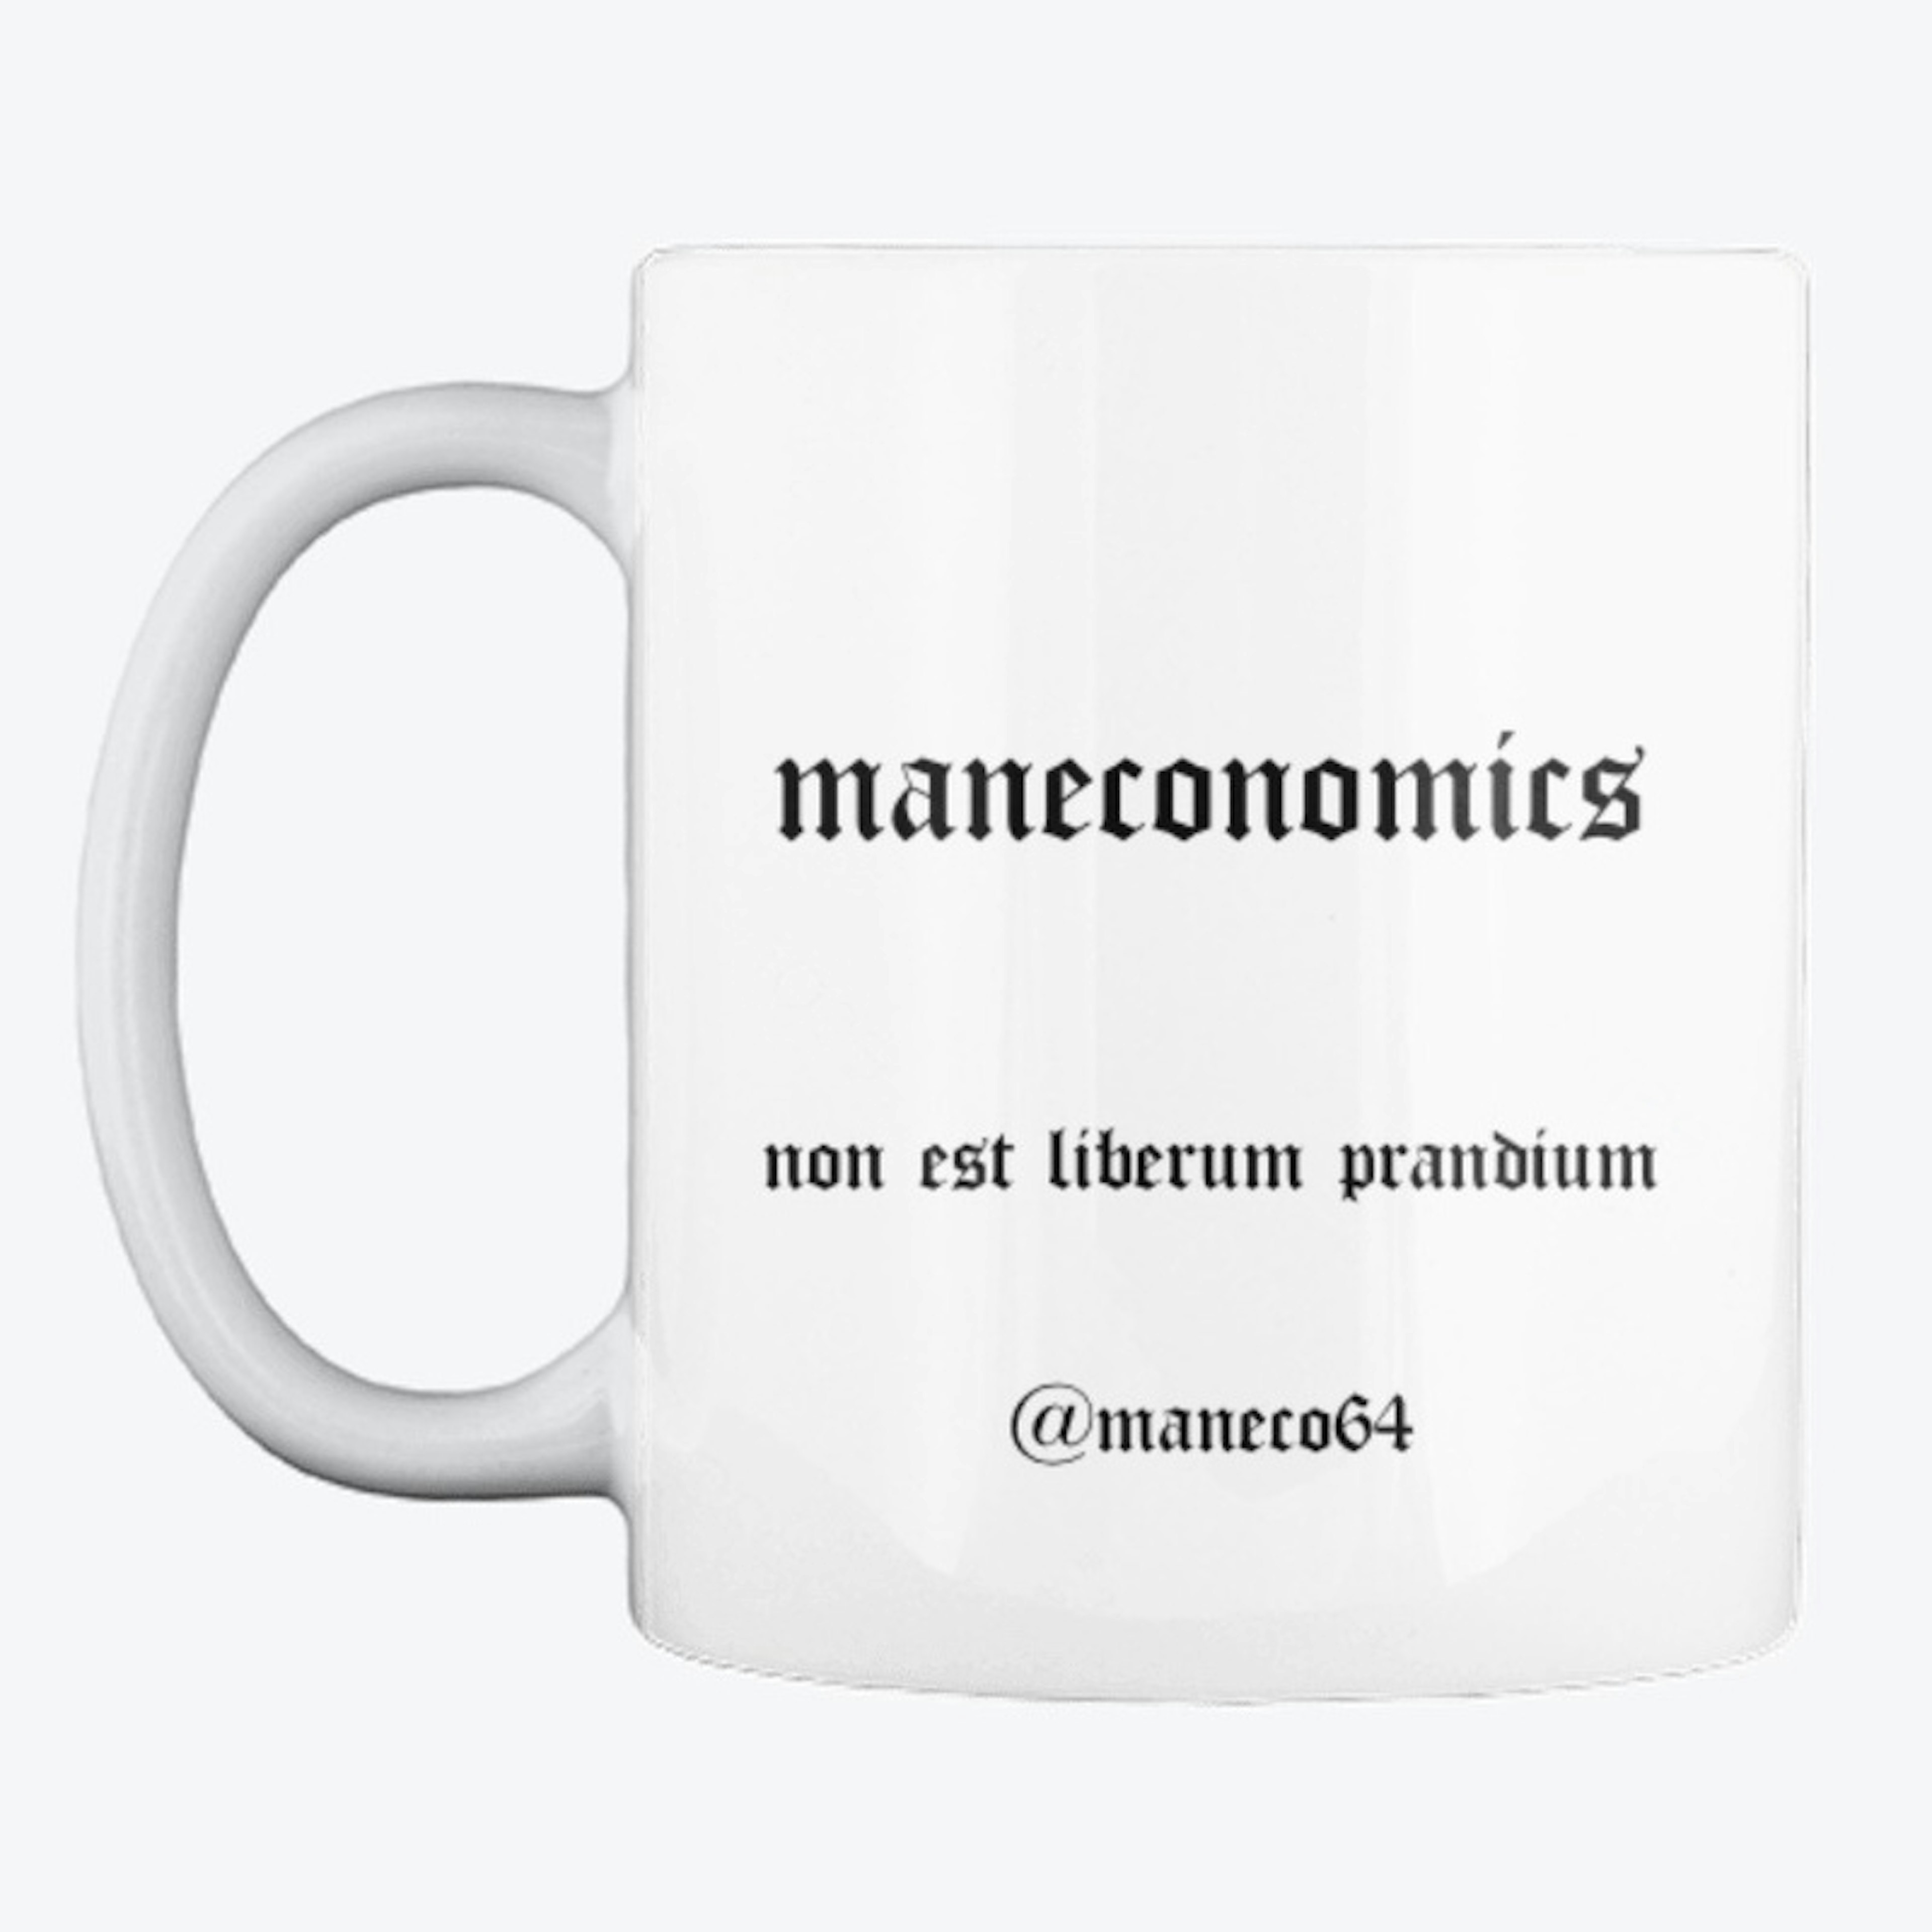 Maneconomics